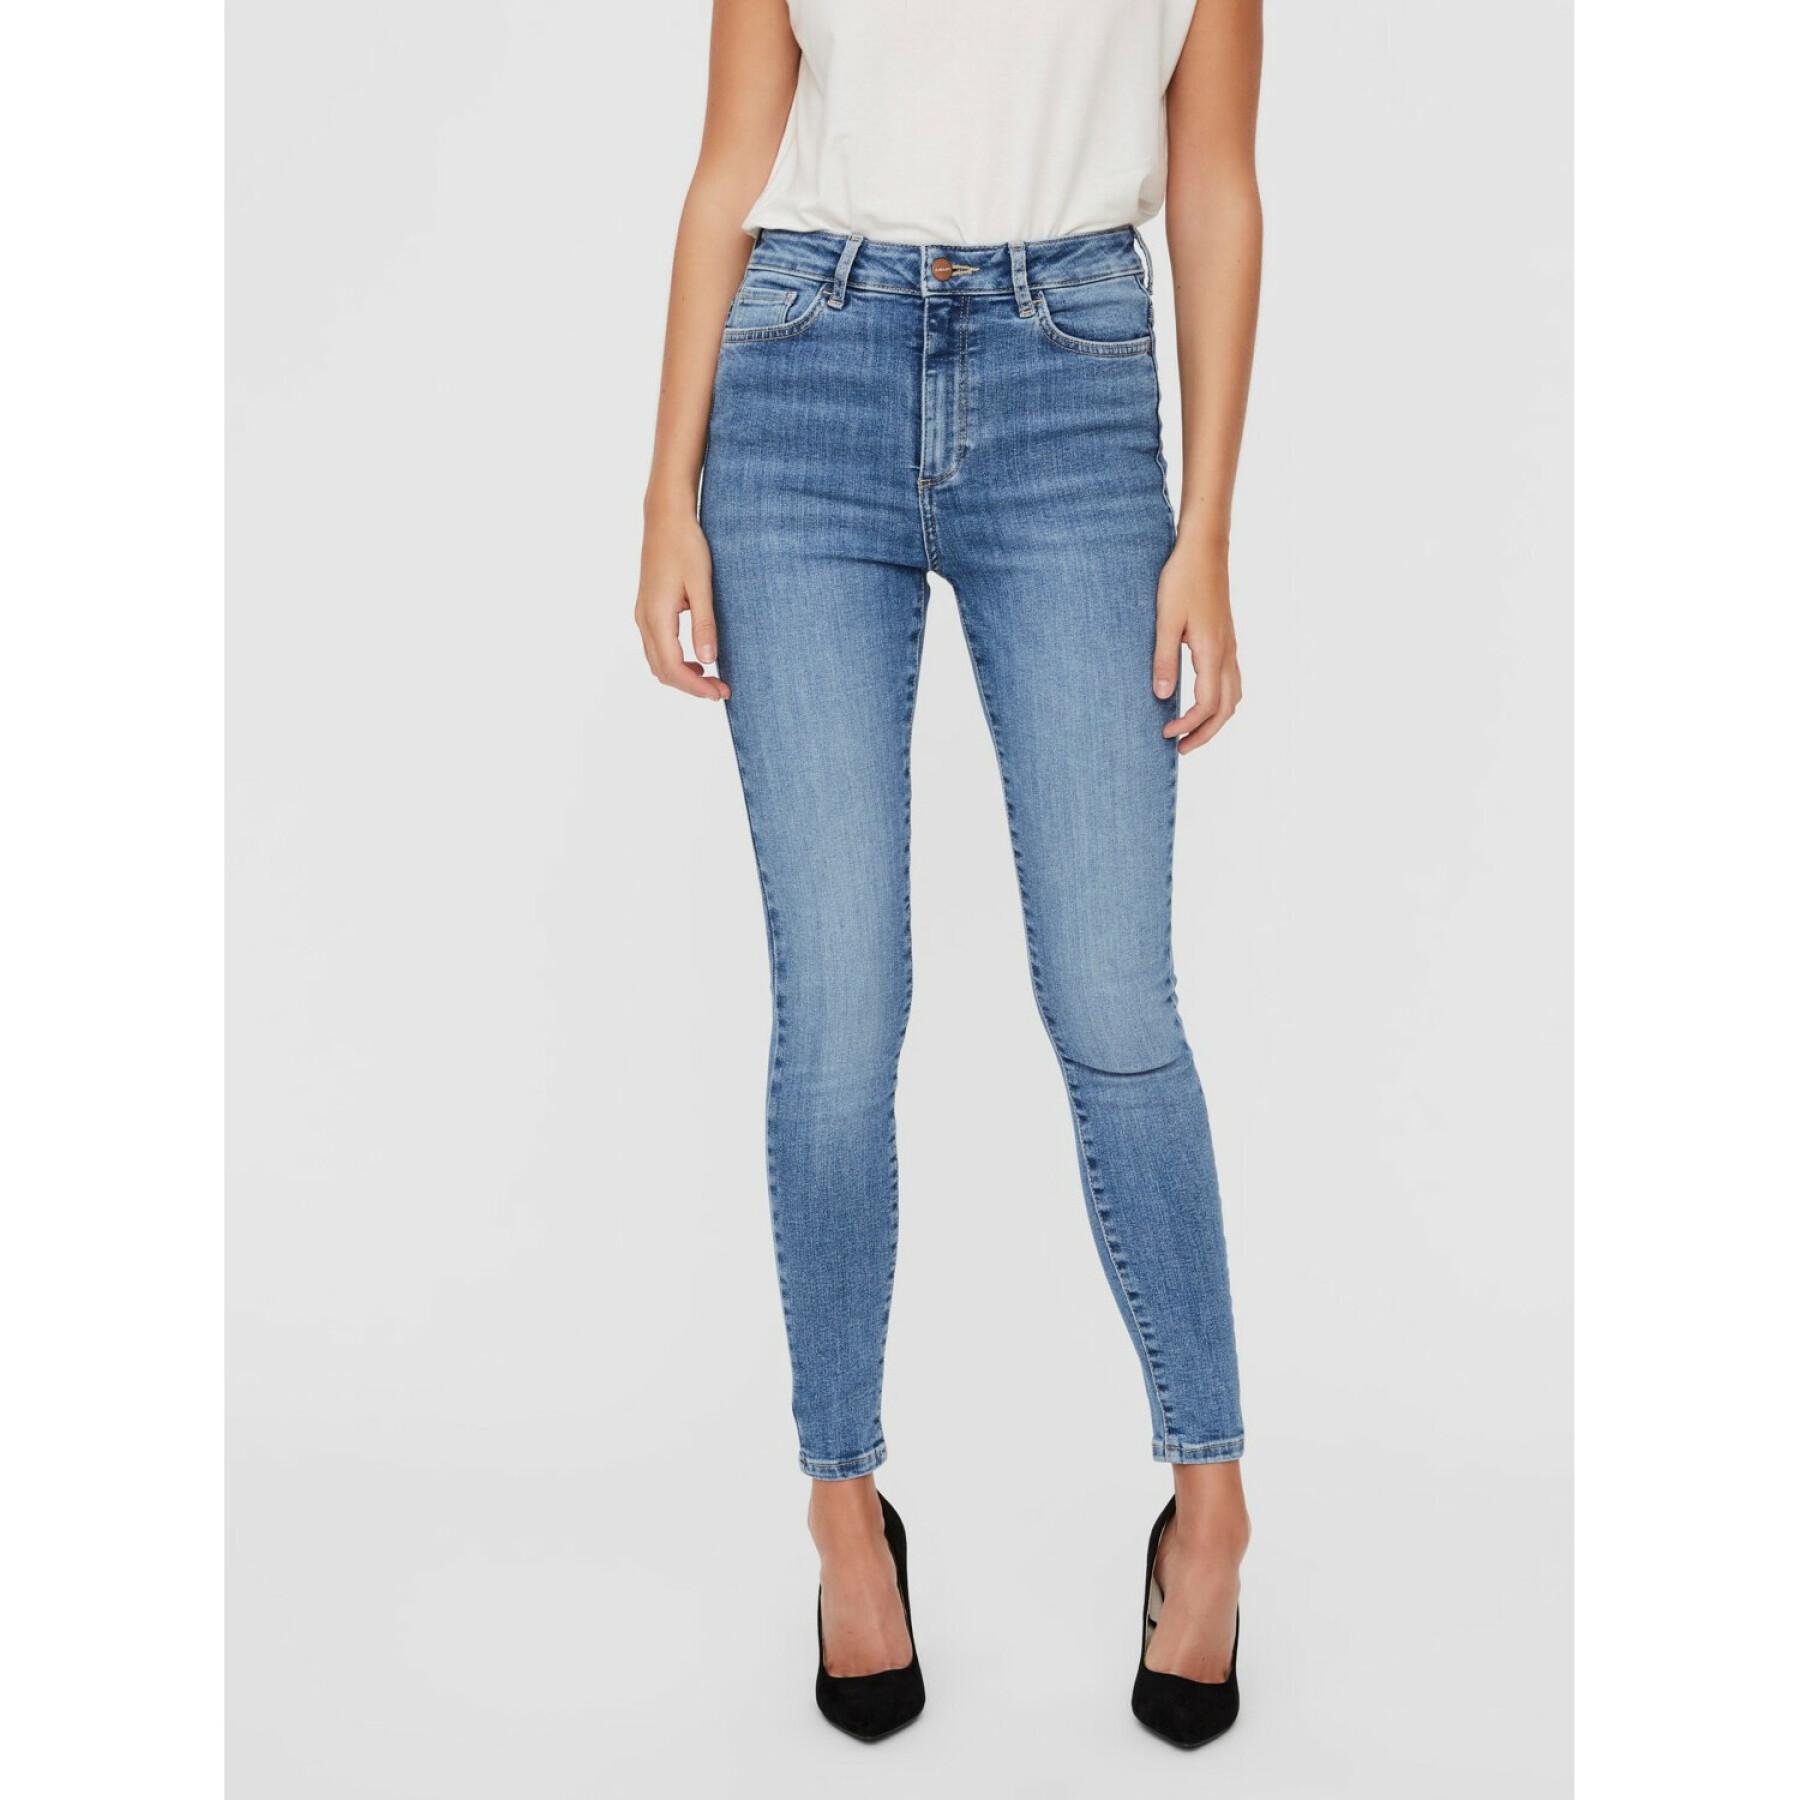 Women's skinny jeans Vero Moda vmsophia 3142